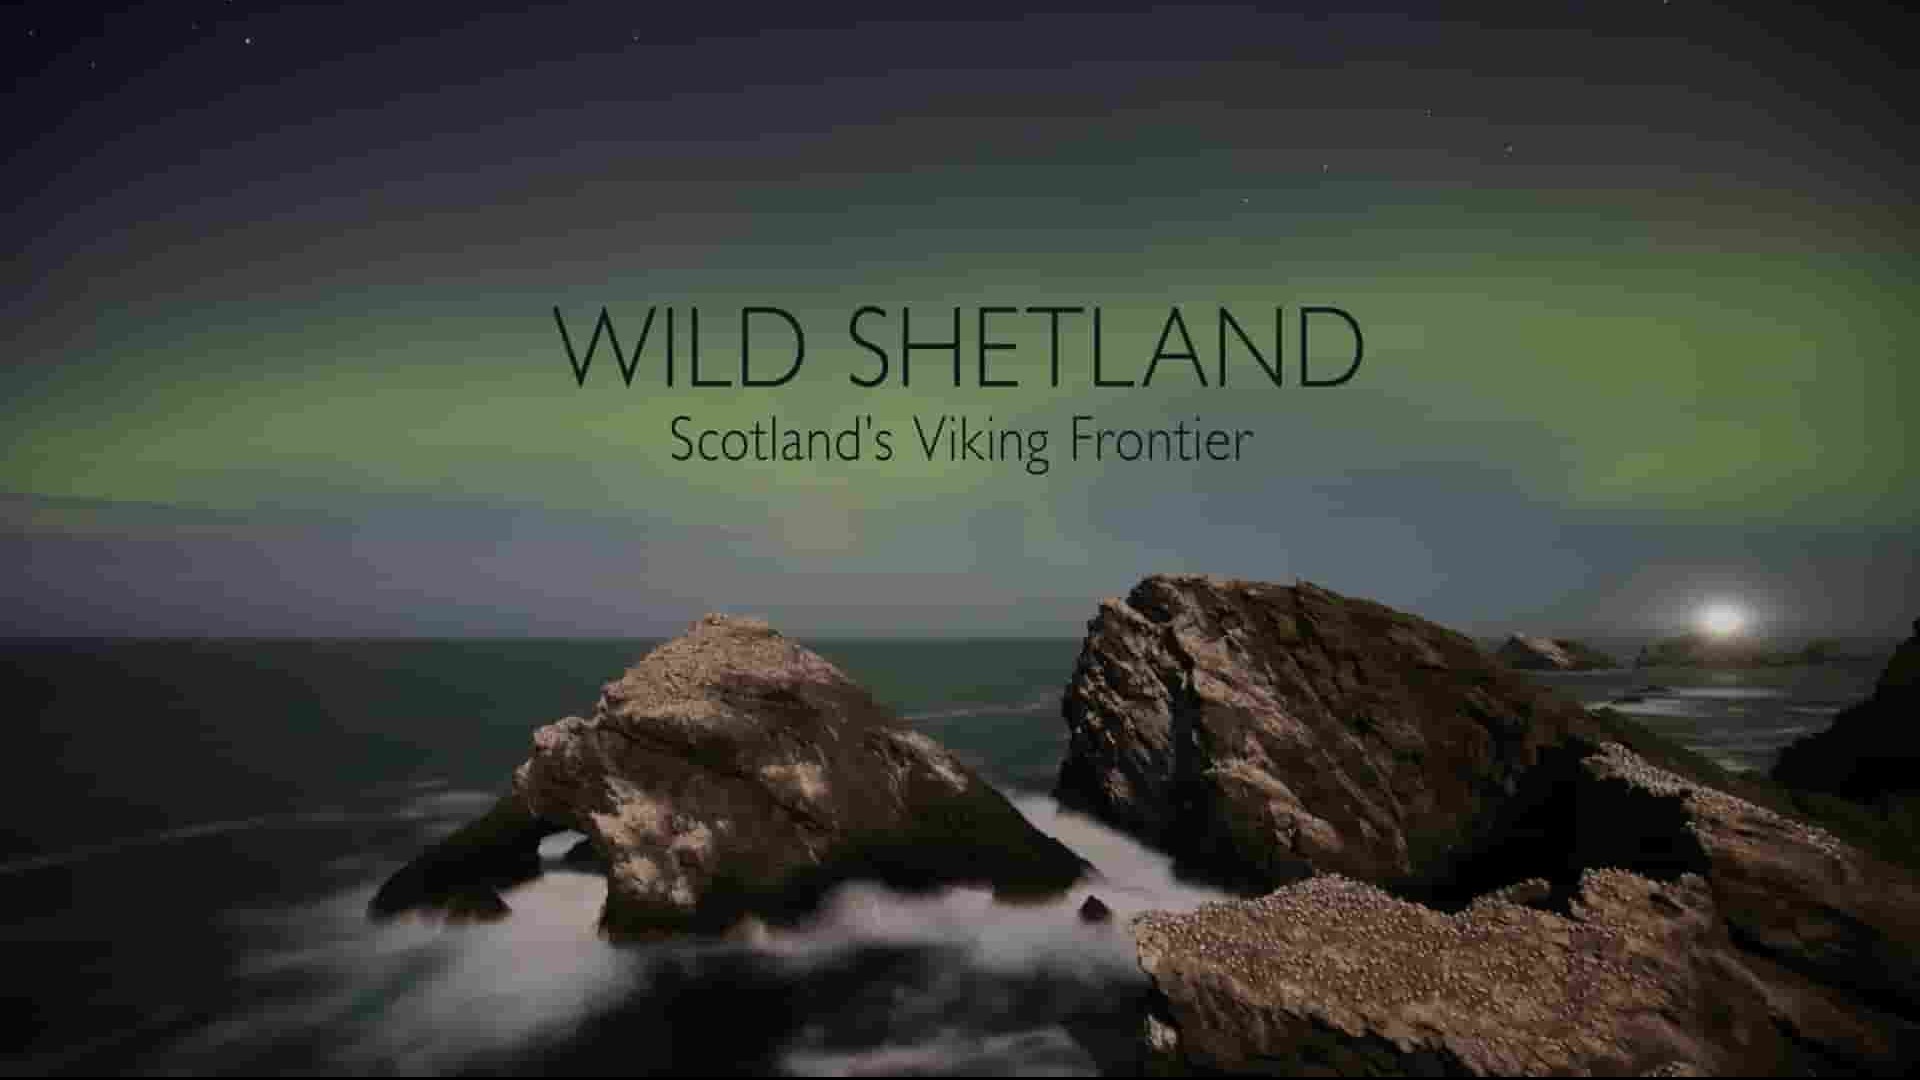 BBC纪录片《狂野设得兰：苏格兰的维京边境 Wild Shetland: Scotland’s Viking Frontier 2019》全1集 英语英字 1080P高清网盘下载